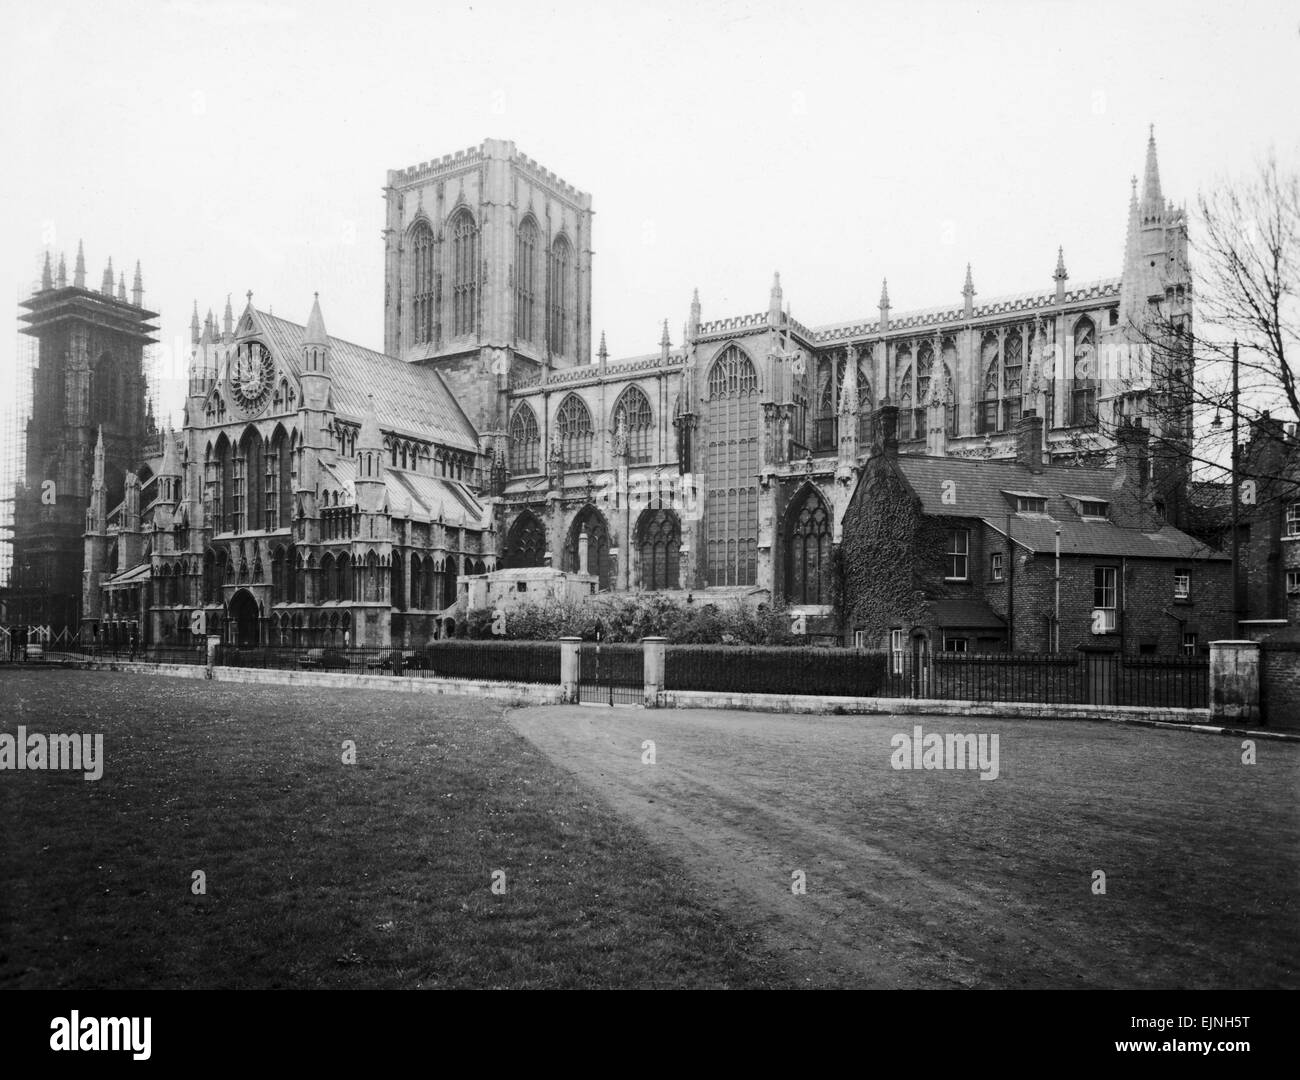 Une vue générale de la cathédrale de York, à York, en Angleterre, la cathédrale gothique contient des vitraux médiévaux ; le transept sud a été gravement endommagé par un incendie en 1984, mais a été restauré. Vers 1970 Banque D'Images